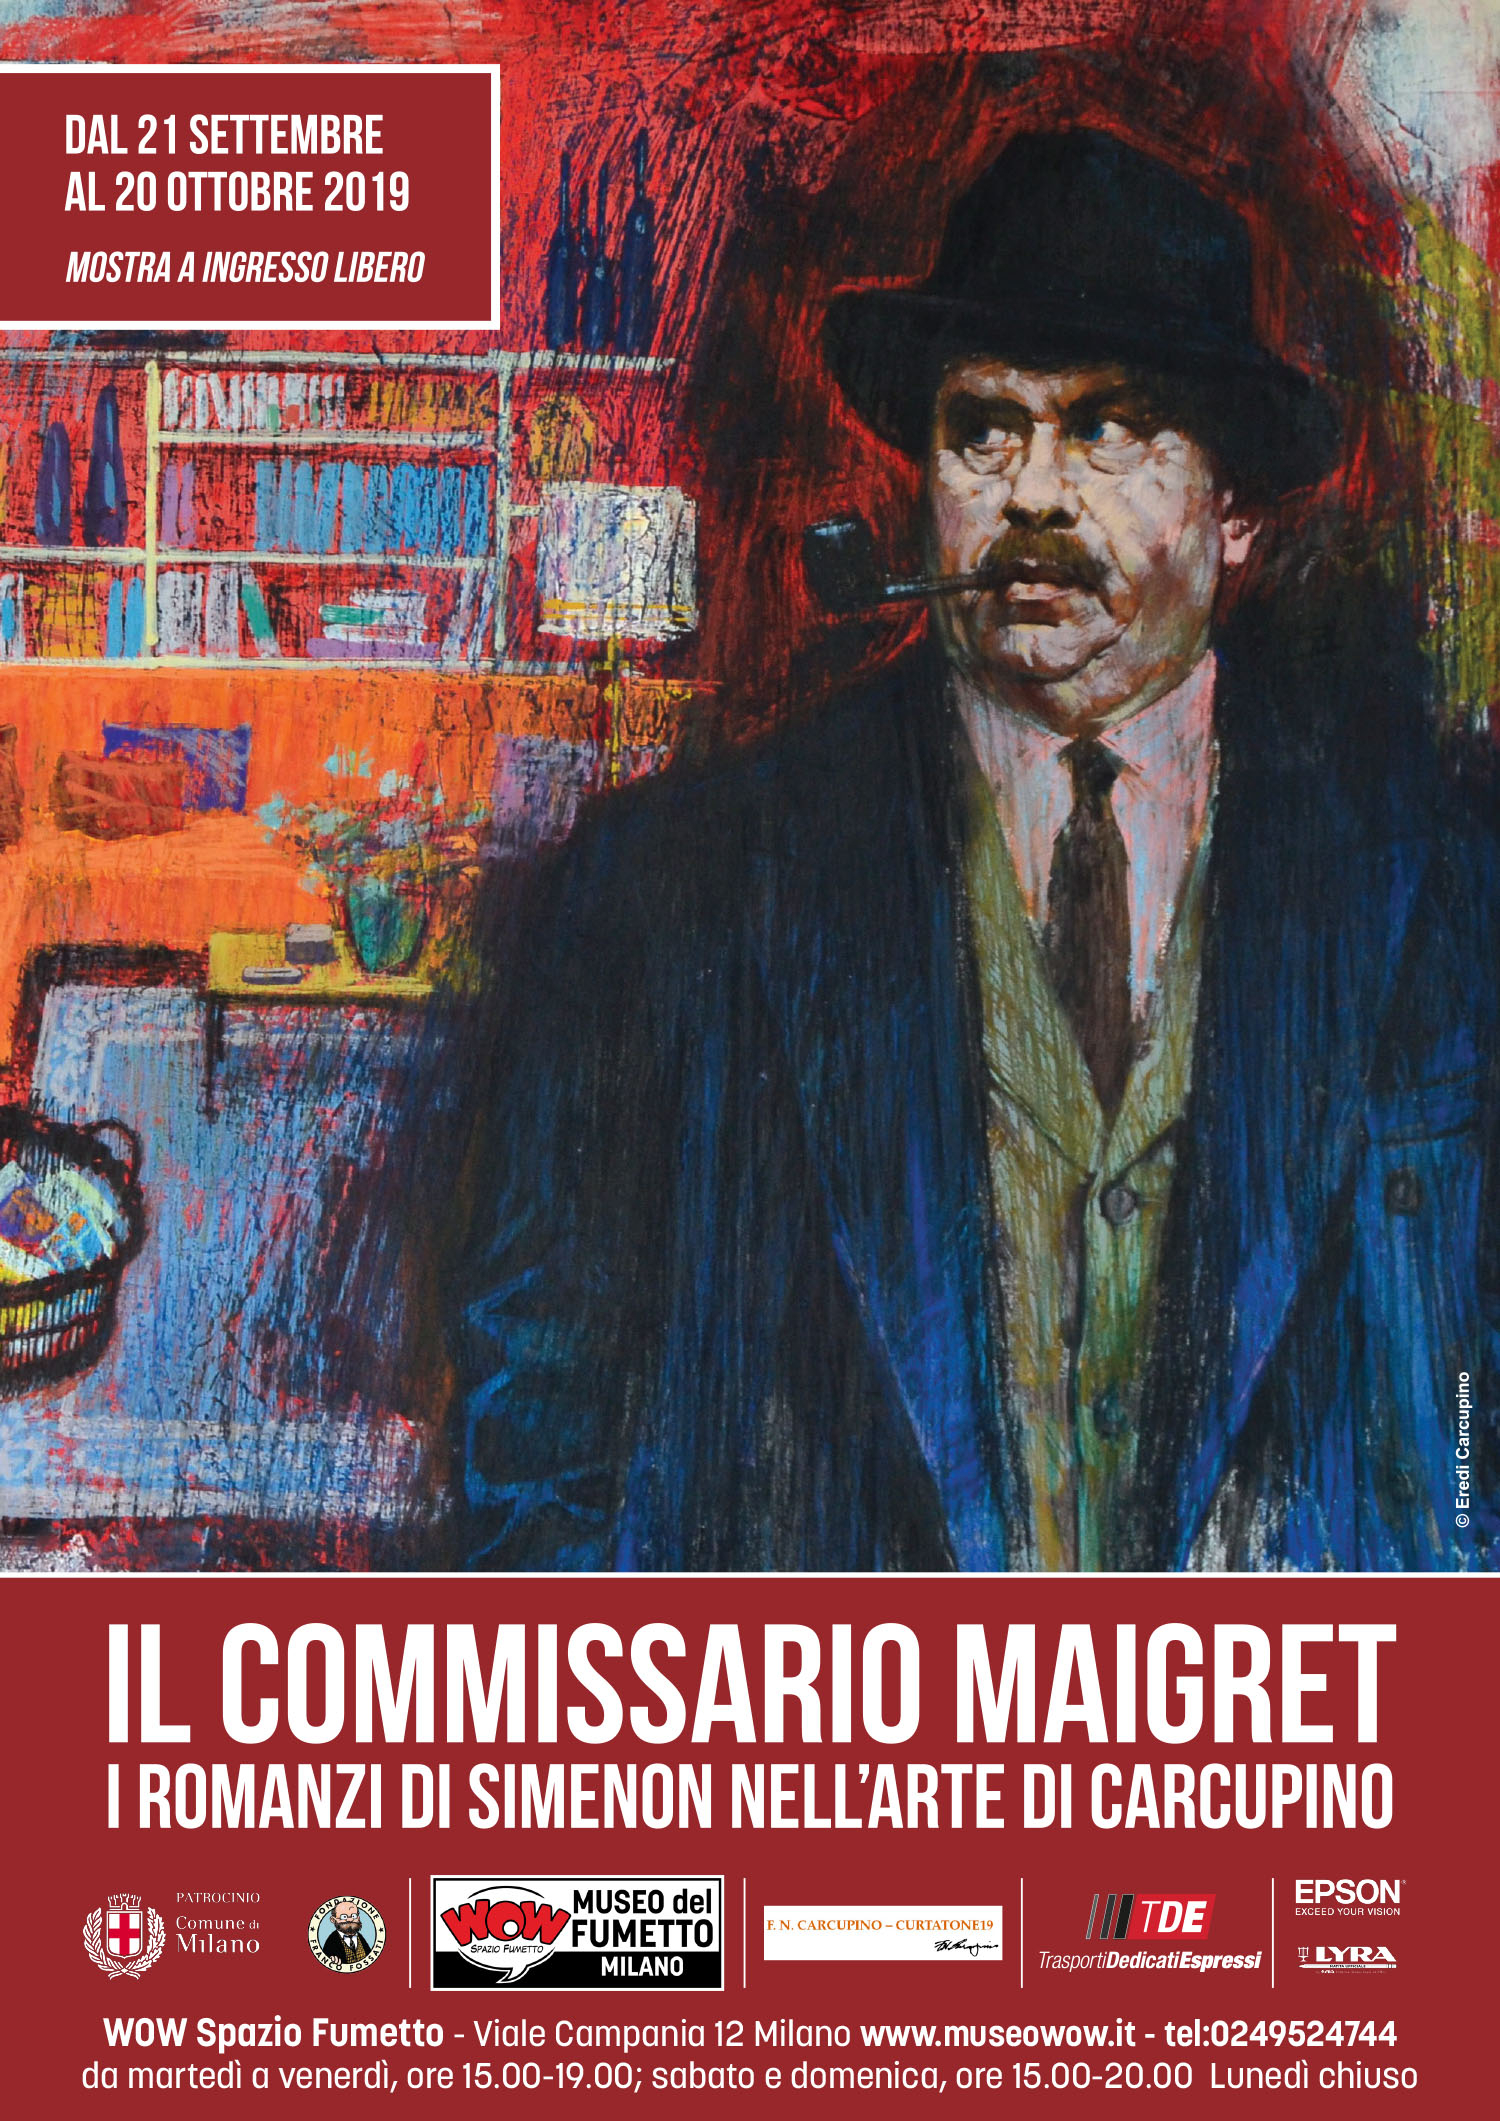 <p><strong>Anche se ci sono alcuni personaggi di nome Maigret in alcune opere precedenti di Georges Simenon, la data di nascita ufficiale del commissario Maigret coincide con la stesura del romanzo &ldquo;Pietro il l&egrave;ttone&rdquo;, nell&rsquo;inverno del 1929. Per festeggiare i novant&rsquo;anni del commissario Maigret, WOW Spazio Fumetto, in collaborazione con l&rsquo;Associazione F.N. Carcupino, presenta la mostra &ldquo;Il Commissario Maigret. I romanzi di Simenon nell&rsquo;arte di Carcupino&rdquo;: un&rsquo;esposizione di oltre 30 tavole originali realizzate dall&rsquo;artista Fernando Carcupino per illustrare racconti e romanzi di Maigret, pubblicati a puntate soprattutto sul settimanale &quot;Grazia&quot; a met&agrave; anni Sessanta.</strong> Il settimanale, fondato nel 1938, nel dopoguerra &egrave; diventato per la Arnoldo Mondadori Editore (la casa editrice che pubblica Maigret fin dal 1931) una delle colonne portanti, rivolta alla moderna donna italiana. <strong>Nelle splendide illustrazioni di Carcupino, Maigret ha naturalmente il volto dell&rsquo;attore Gino Cervi</strong>, che sta portando il personaggio di Simenon in tutte le case grazie alla Televisione nazionale. I dipinti testimoniano l&rsquo;altissimo livello raggiunto dall&rsquo;artista in un momento particolarmente felice della sua produzione. <strong>Le ambientazioni parigine, le immagini dal taglio cinematografico, la scelta del colore, l&rsquo;uso dei contrasti cromatici</strong>, si concretizzano nella definizione degli spazi e nella &quot;fotografia&quot; di particolari momenti narrativi, fissando l&rsquo;essenza psicologica dei personaggi. La maestria tecnica e una grande profondit&agrave; di osservazione, insieme a un gusto sorprendente per l&rsquo;impostazione delle scene, rendono queste tavole una raccolta preziosa. <a target="_blank" href="https://sites.google.com/site/carcupino/biografia"><strong>Fernando Nusci Carcupino</strong></a>&nbsp;nasce nel 1922 a Napoli da famiglia milanese. Cresce e studia a Milano, frequentando il Liceo Artistico e l&#39;Accademia di Belle Arti a Brera. Gi&agrave; nel 1939 collabora con vignette umoristiche al settimanale satirico Settebello di Cesare Zavattini e Achille Campanile. Arruolato nella Seconda guerra mondiale, la conclude volontario contro i nazifascisti. Dopo la Liberazione, nel 1945, &egrave; invitato da Mario Faustinelli a collaborare alla rivista veneziana a fumetti &quot;Asso di Picche&quot;, a fianco di altri grandi disegnatori come Dino Battaglia, Giorgio Bellavitis, Alberto Ongaro e Hugo Pratt: il famoso &quot;gruppo di Venezia&quot;. Nel 1954 inizia a collaborare con la rivista &quot;La settimana umoristica&quot; dove presenta - tra noie censorie - anche <em>La ragazza di Carcupino</em>: un paginone centrale di &quot;Roma by night&quot; dedicato spesso alla corruzione in una capitale brulicante di malfattori, militari e prelati. Tra gli anni Cinquanta e Sessanta collabora pi&ugrave; intensamente con Mondadori: per il settimanale &quot;Epoca&quot; &ndash; diretto in quel periodo da Enzo Biagi &ndash; illustra tra l&#39;altro la serie di inserti sulla Prima guerra mondiale. Risalgono agli anni Sessanta anche le illustrazioni realizzate per i romanzi ancora inediti del Commissario Maigret pubblicati sulla rivista &quot;Grazia&quot;. Dagli anni Settanta si dedica prevalentemente alla pittura. Il suo nome figura nei pi&ugrave; importanti cataloghi nazionali e internazionali d&#39;arte; di lui scrivono autorevoli critici e giornalisti. Famoso per i suoi nudi femminili, per le sue maternit&agrave;, per i ritratti, per i paesaggi e per le nature morte, ottiene consensi di critica e di pubblico. Nel 1983 il presidente della Repubblica Sandro Pertini lo nomina Cavaliere della Repubblica &quot;per importanti meriti artistici&quot;. Di carattere schivo e temperamento riservato, si tiene sempre lontano da manifestazioni mondane, ma le sue opere sono esposte con successo in mostre e gallerie tra le pi&ugrave; prestigiose a Milano e in Italia e conservate presso la Galleria d&#39;Arte Gelmi di Sesto San Giovanni. Muore a Milano il primo giorno di primavera del 2003. L&rsquo;<a target="_blank" href="https://sites.google.com/site/carcupino/associazione-fncarcupino"><strong>Associazione FNCarcupino</strong></a>, nata nel 2010 dall&rsquo;iniziativa della figlia Marcella, con la madre Carla e la sorella Stefania, ha coinvolto amici ed estimatori per promuovere l&#39;opera pittorica e illustrativa di Fernando Carcupino. Nel corso della sua lunga carriera, l&#39;artista ha realizzato moltissime opere oggi&nbsp;di propriet&agrave; di appassionati, collezionisti, galleristi ed estimatori. Per colmare la lacuna conoscitiva dovuta alla dispersione del materiale, l&rsquo;associazione ha avviato la catalogazione delle opere pittoriche e illustrative, partendo dall&#39;archivio fotografico dell&#39;autore. Dal 2017&nbsp;organizza anche&nbsp;mostre ed esposizioni.</p><p>All&#39;inaugurazione saranno presenti Venanzio Alberti e Andrea Cassone (curatori della mostra), Stefania Carcupino e Susanna Francalanci (Associazione F.N. Carcupino),&nbsp;Giorgio Pinotti (esperto di Simenon ed editor in chief Adelphi) e Luigi F. Bona (direttore di WOW Spazio Fumetto).</p>